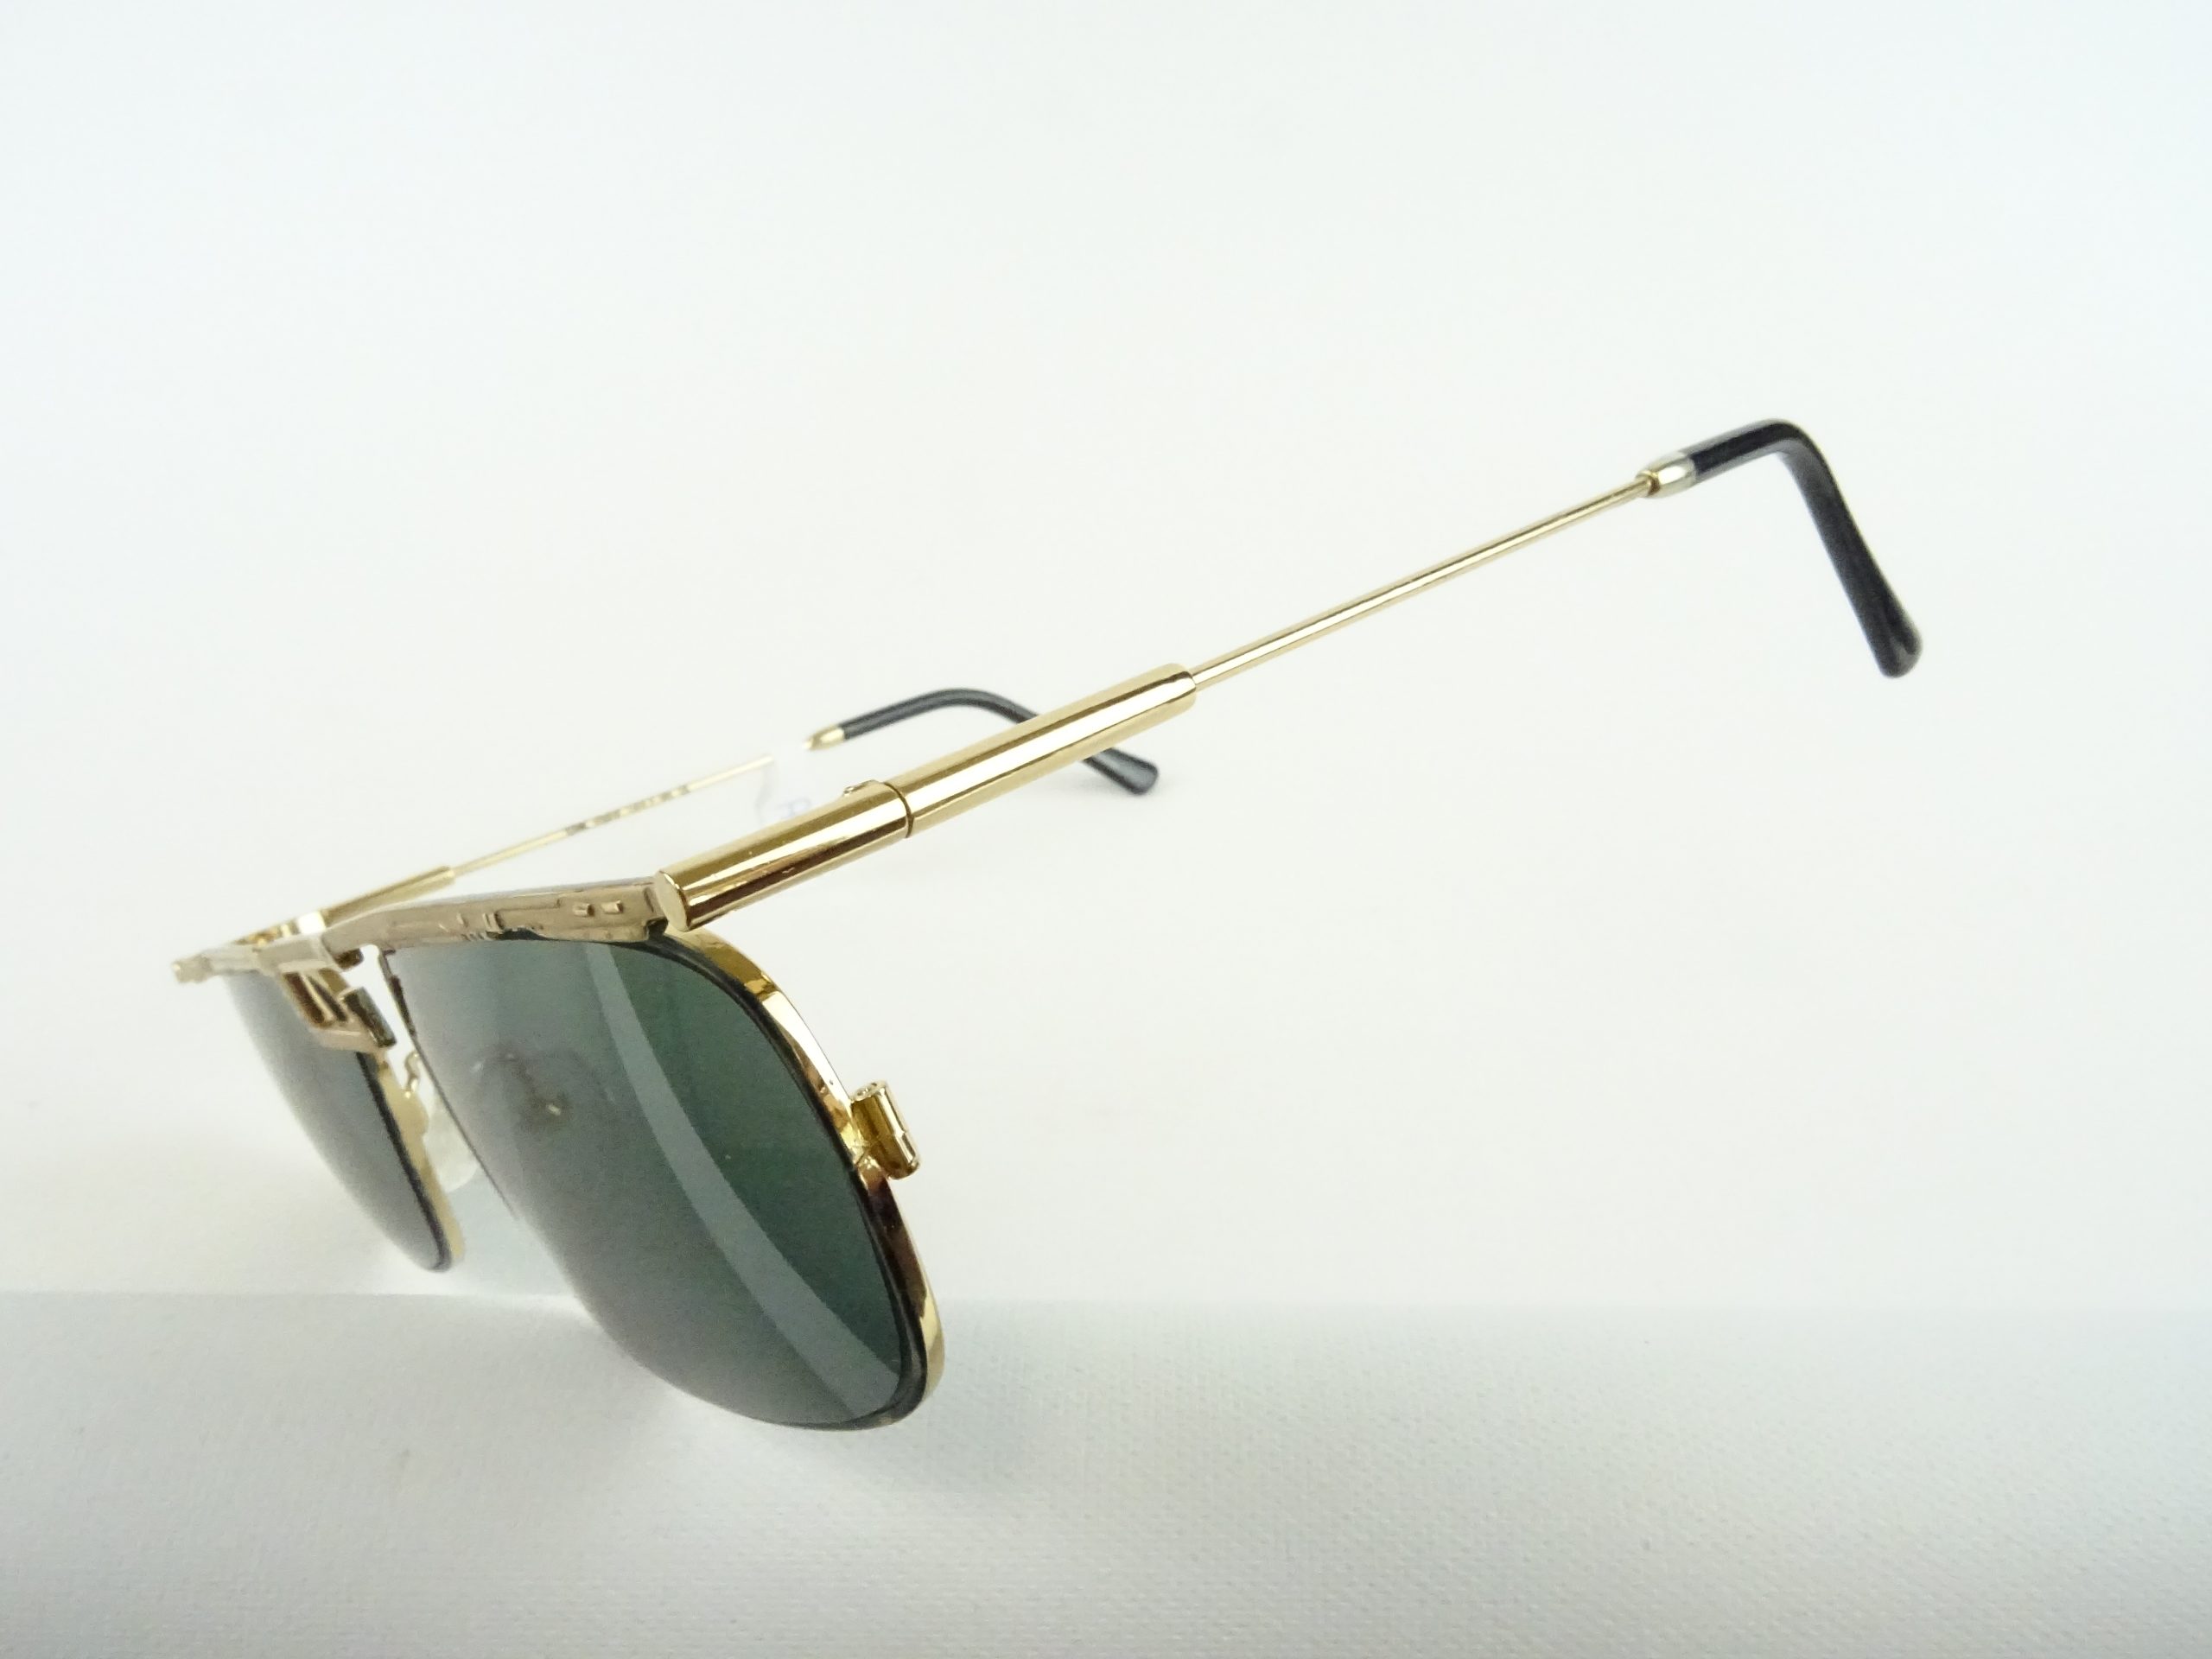 Herren-Sonnenbrille Chai/Italy Gr. Welt große/breite Brillen Gläser Vintage Balkenbrillen getönte Schutz Kopfform L UV mit –